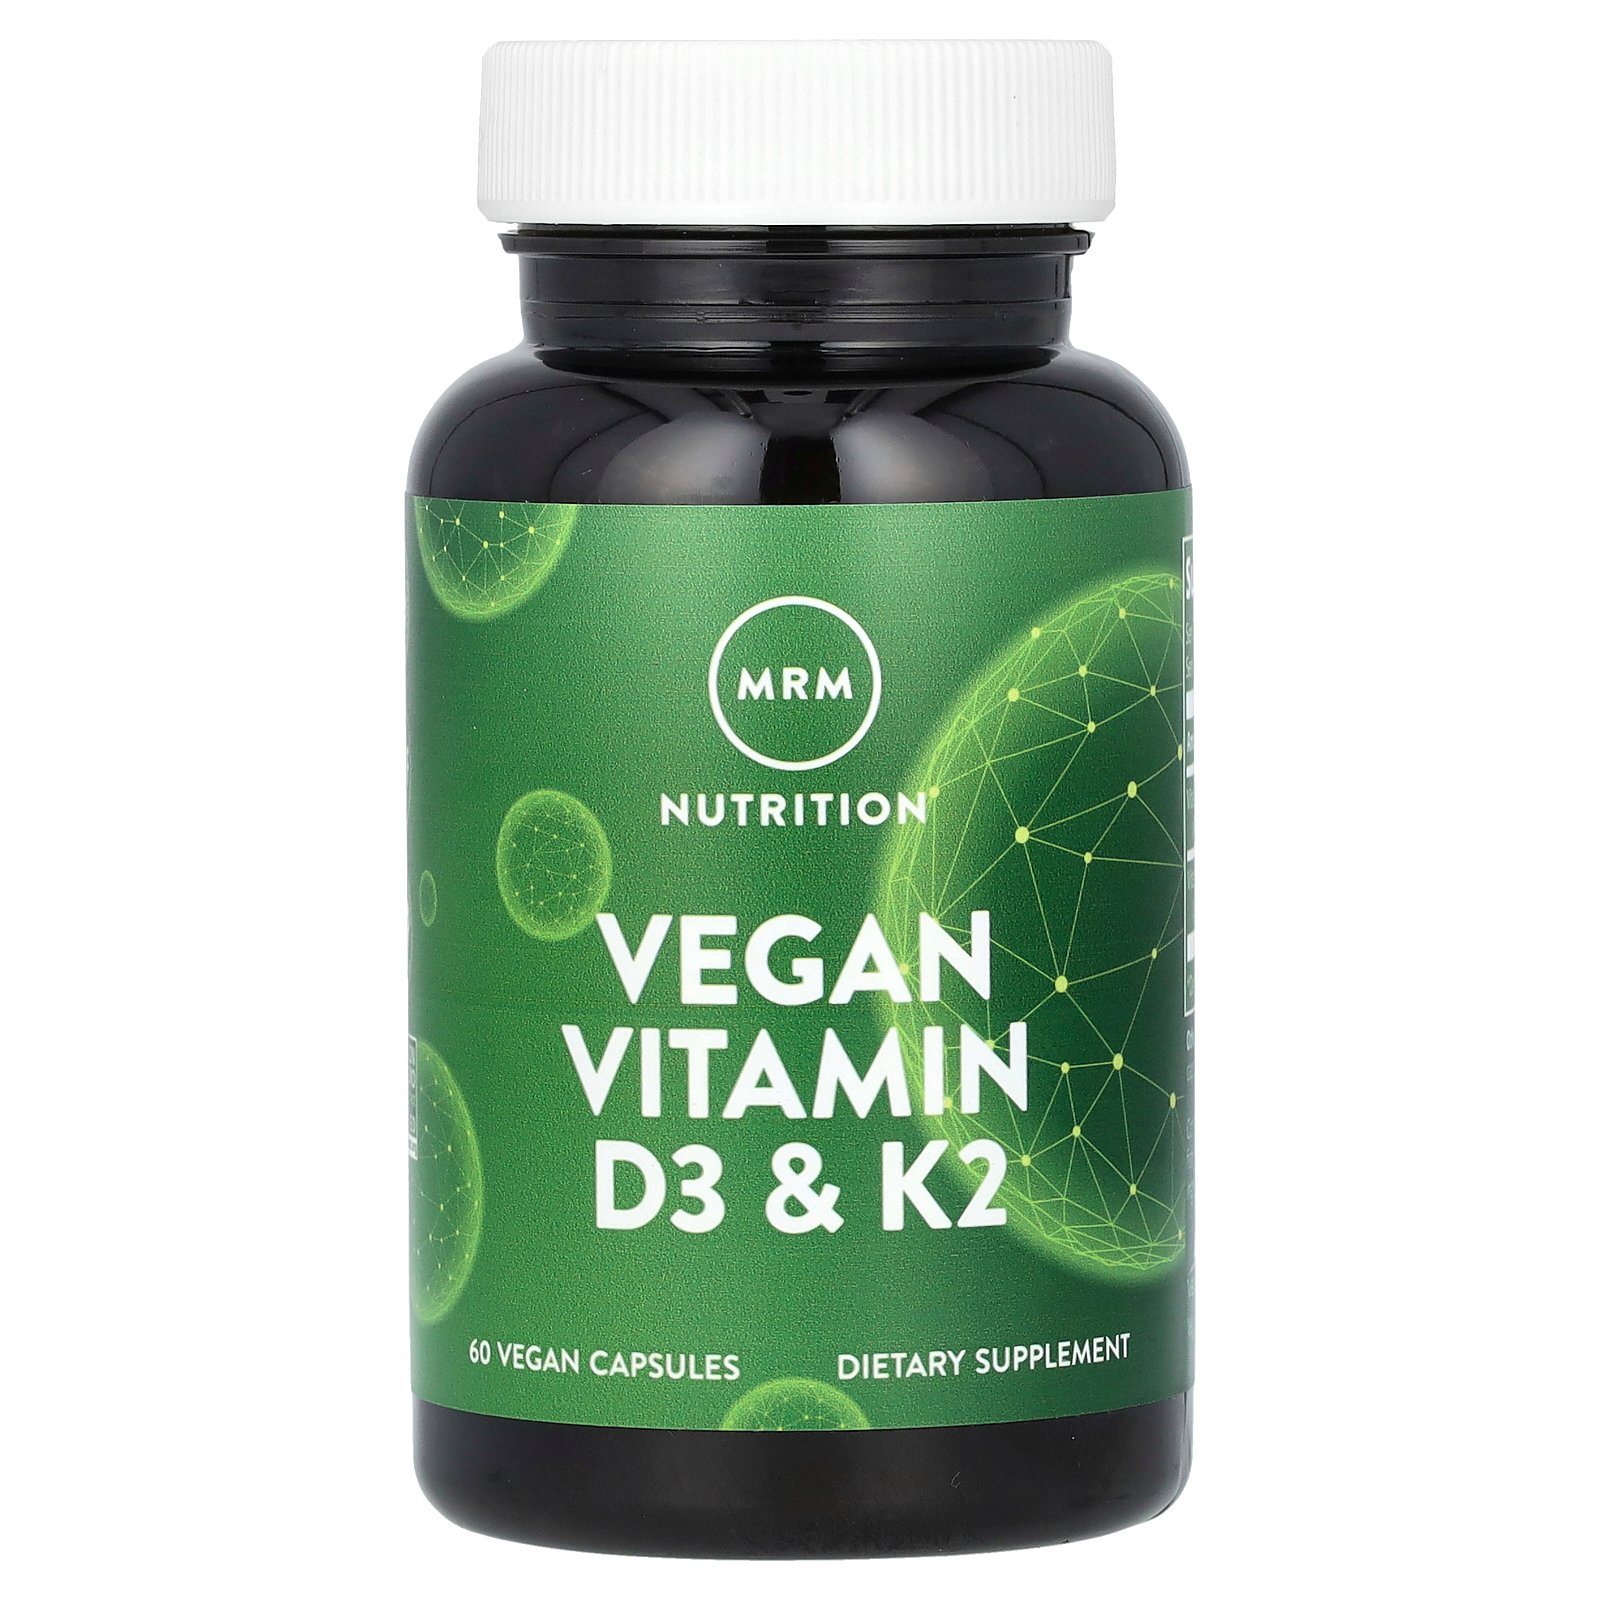 MRM Nutrition ヴィーガン ビタミン D3 & K2  エムアールエム ニュートリション ビタミンD ビタミンK ビタミン類 ビタミンサプリ サプリ ヴィーガンカプセル 62.5mcg 2,500IU 60粒